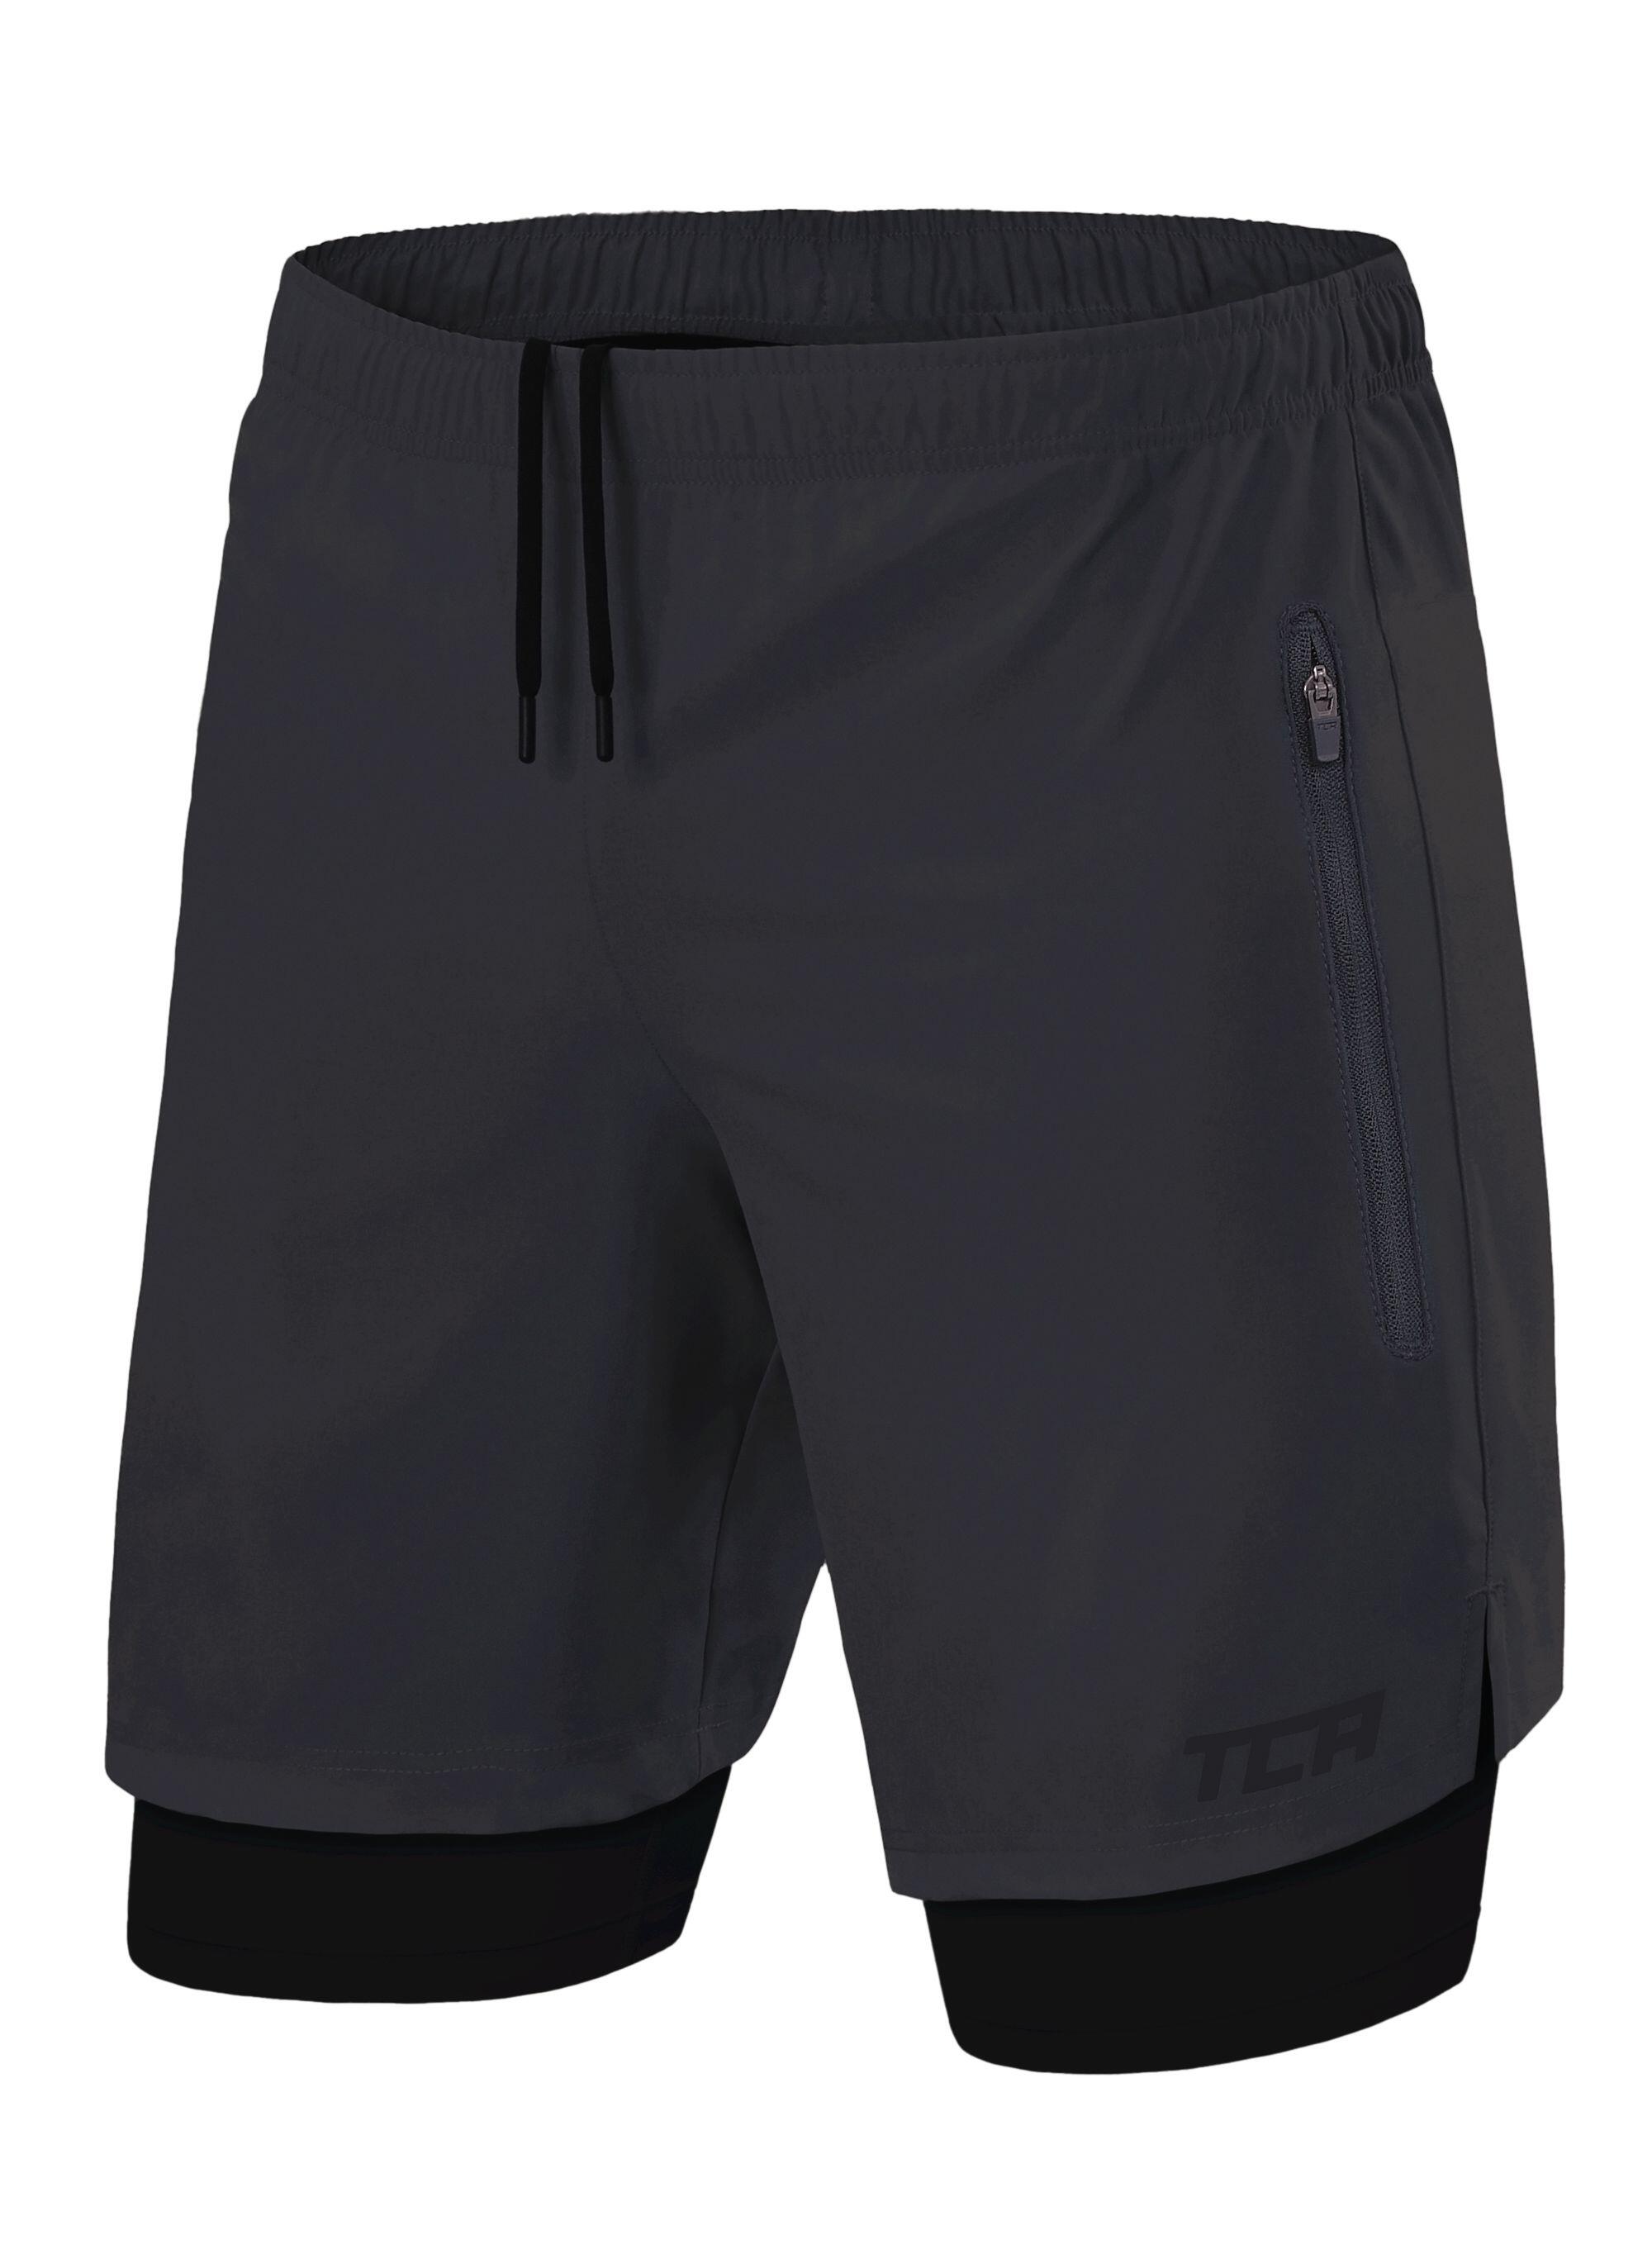 TCA Men's Ultra 2-in-1 Running Shorts with Zip Pockets - Asphalt